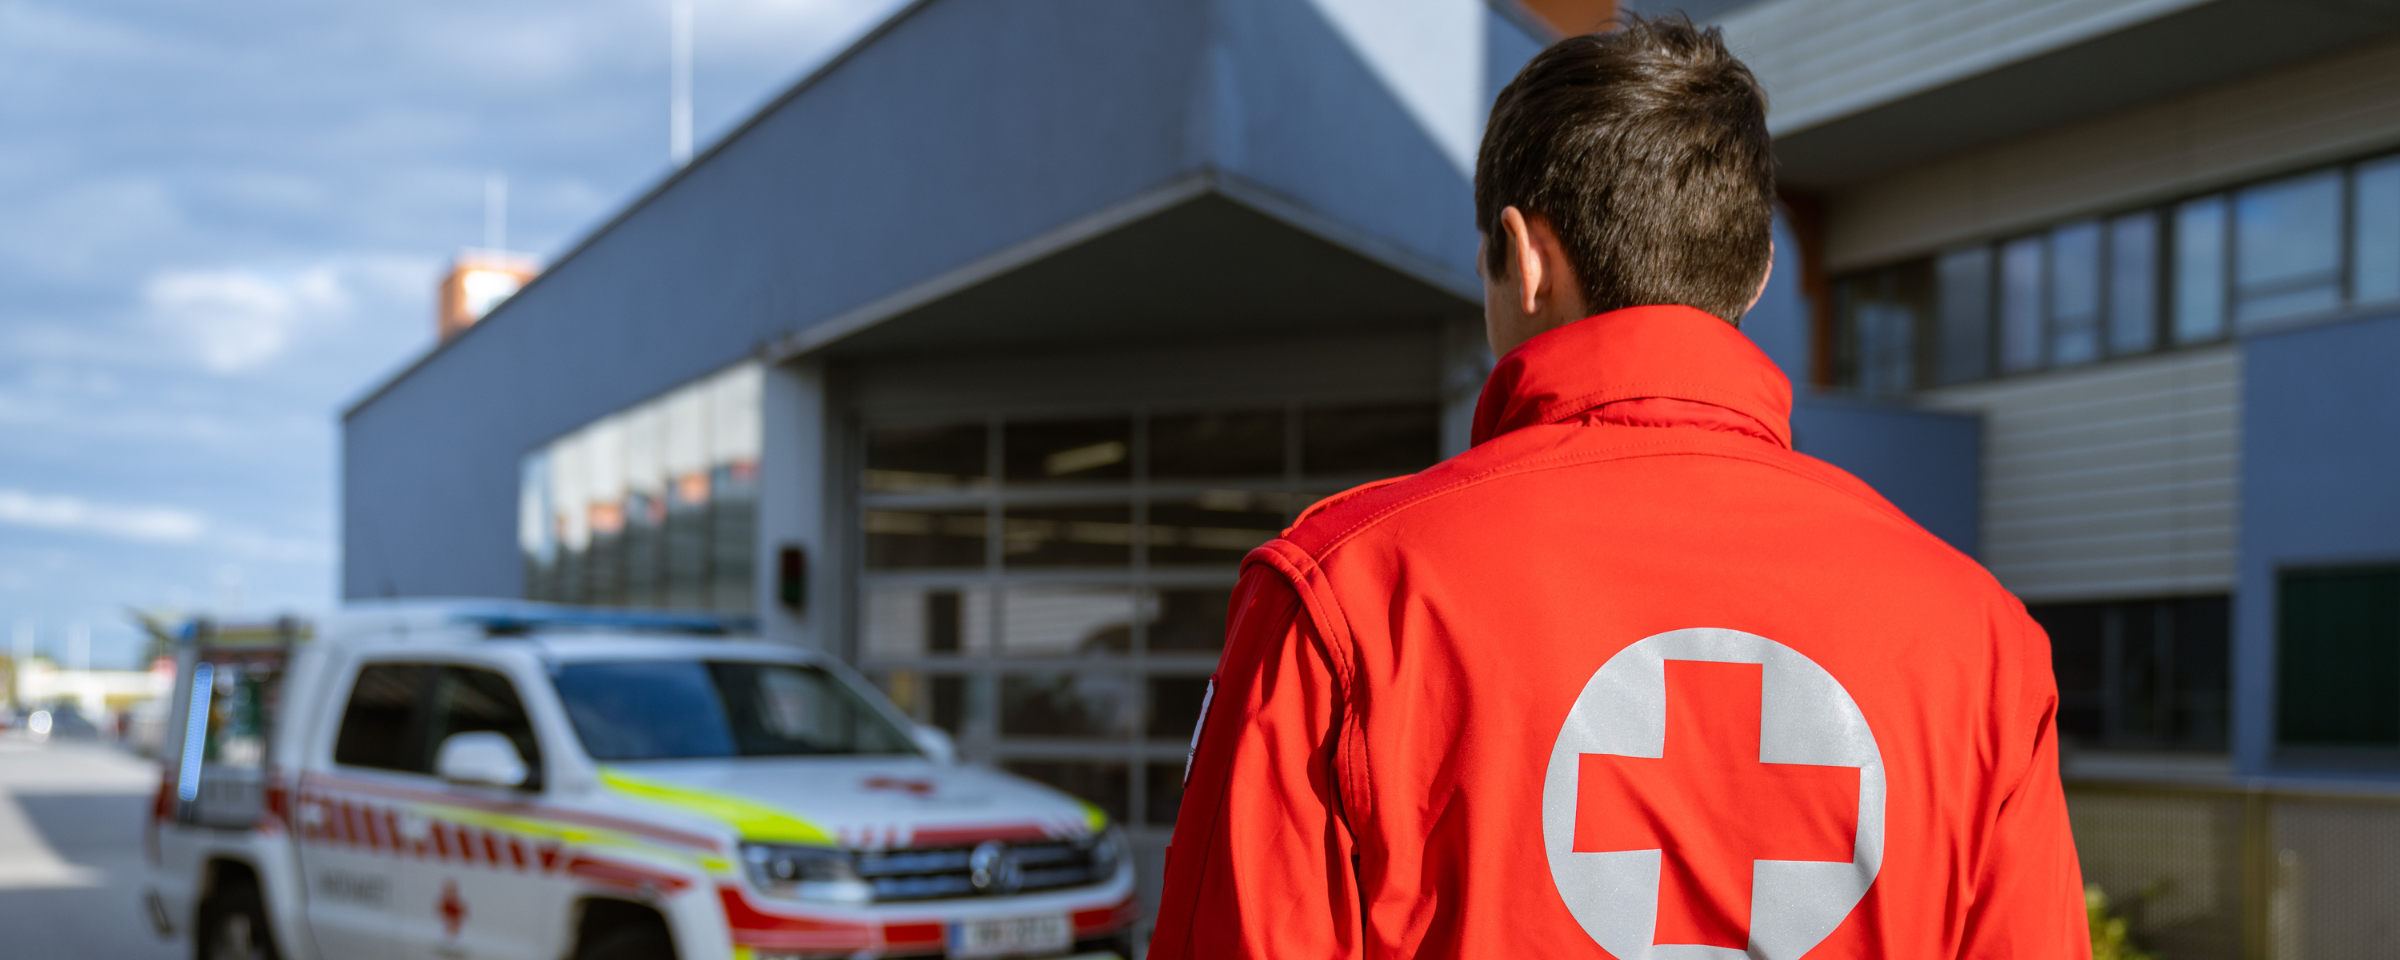 Rettungssanitäter und Rettungswagen vor einem Krankenhaus